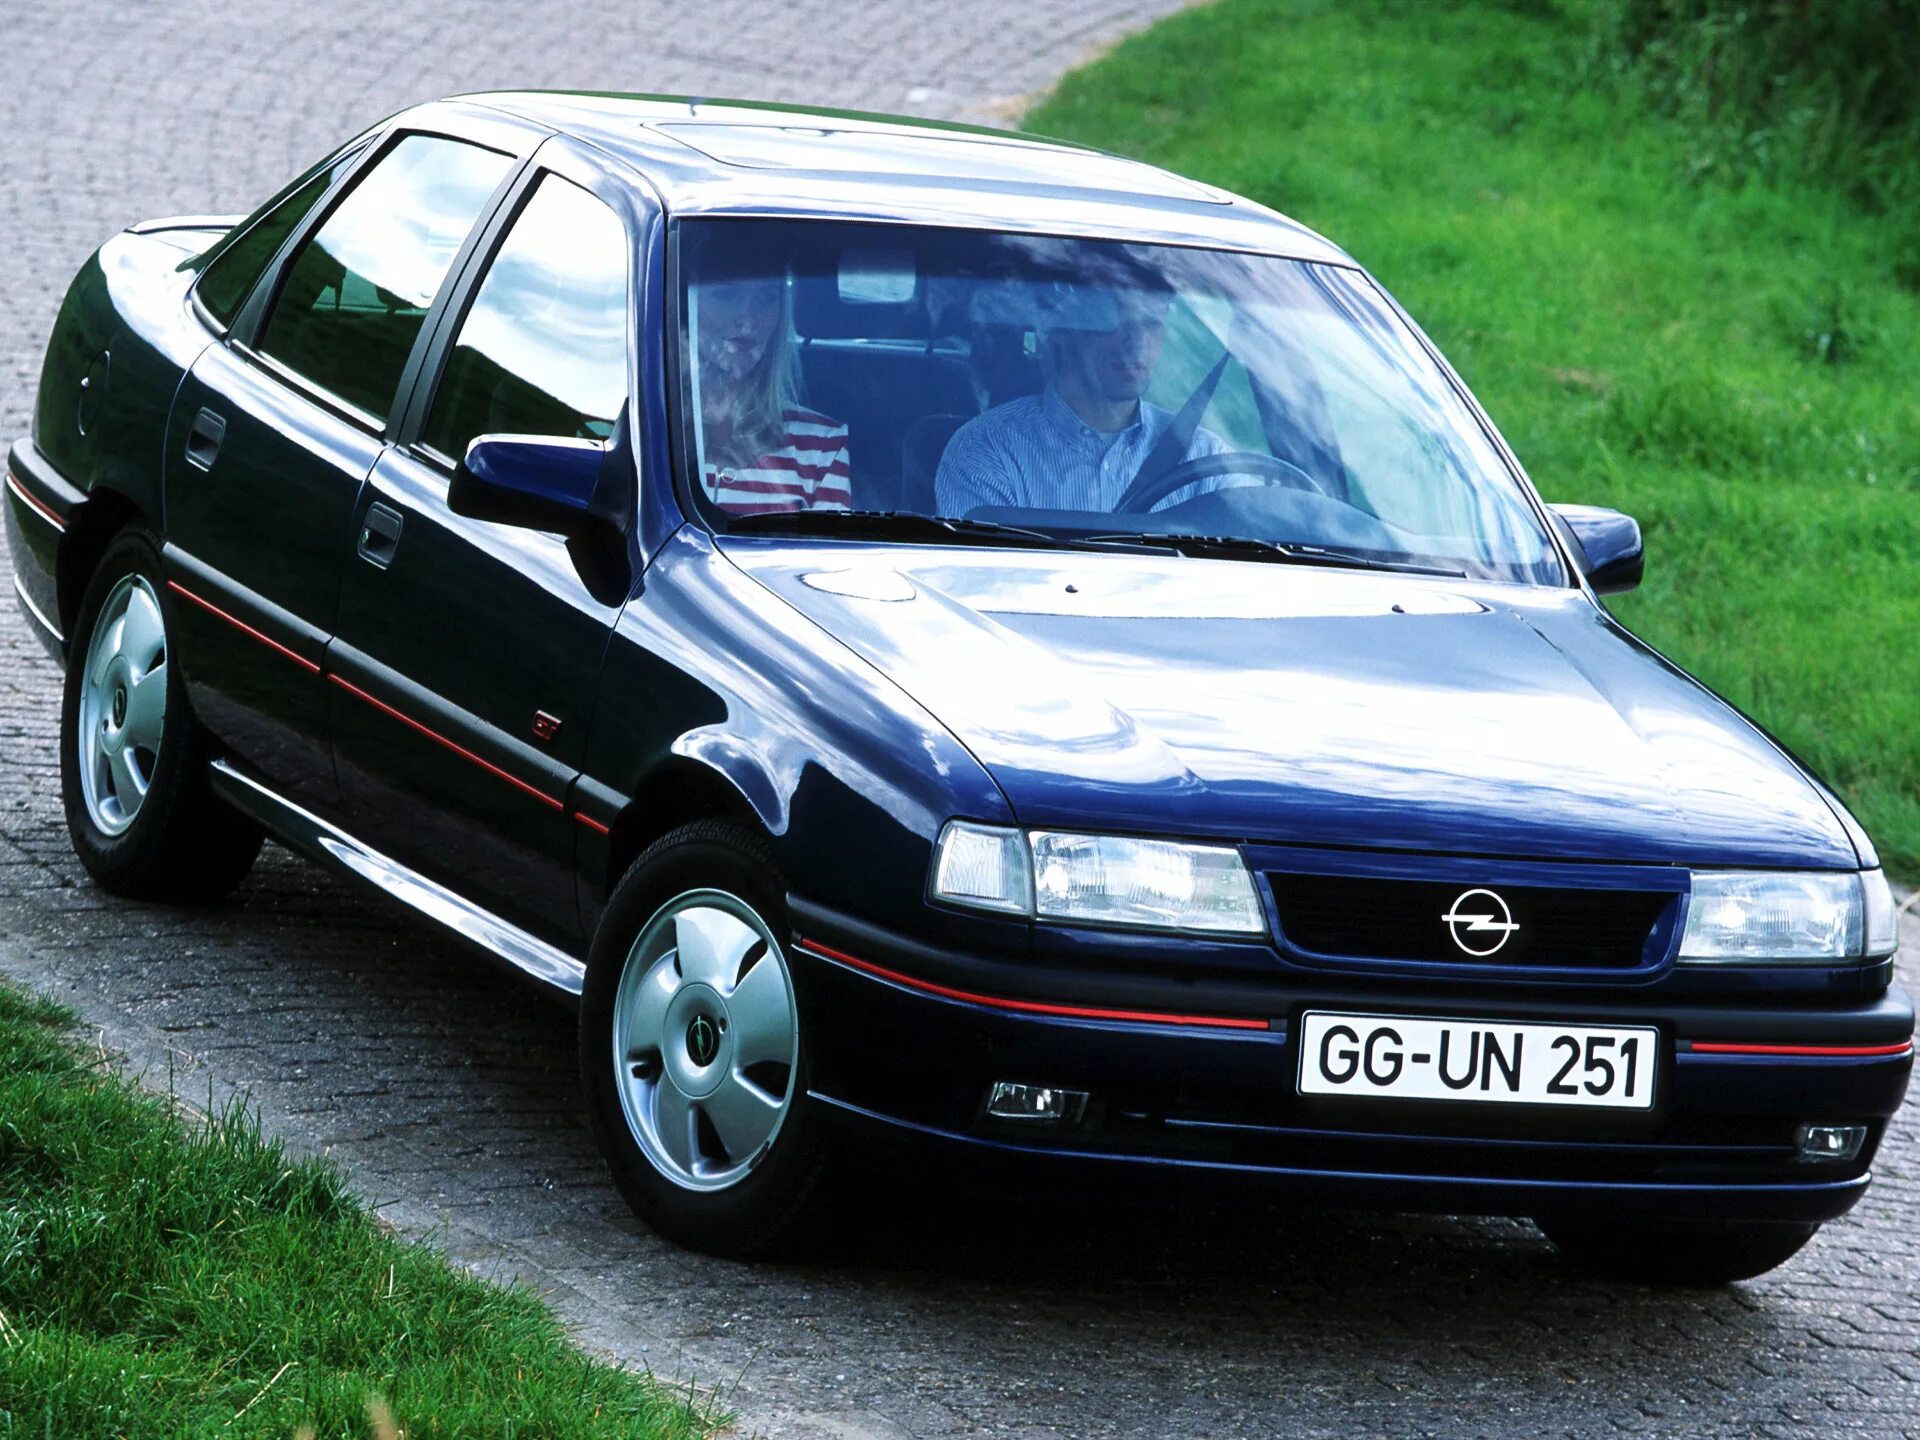 Вектра б года выпуска. Opel Vectra 1992. Opel Vectra a gt 1995. Опель Вектра 1992. Опель Вектра 1995 седан.